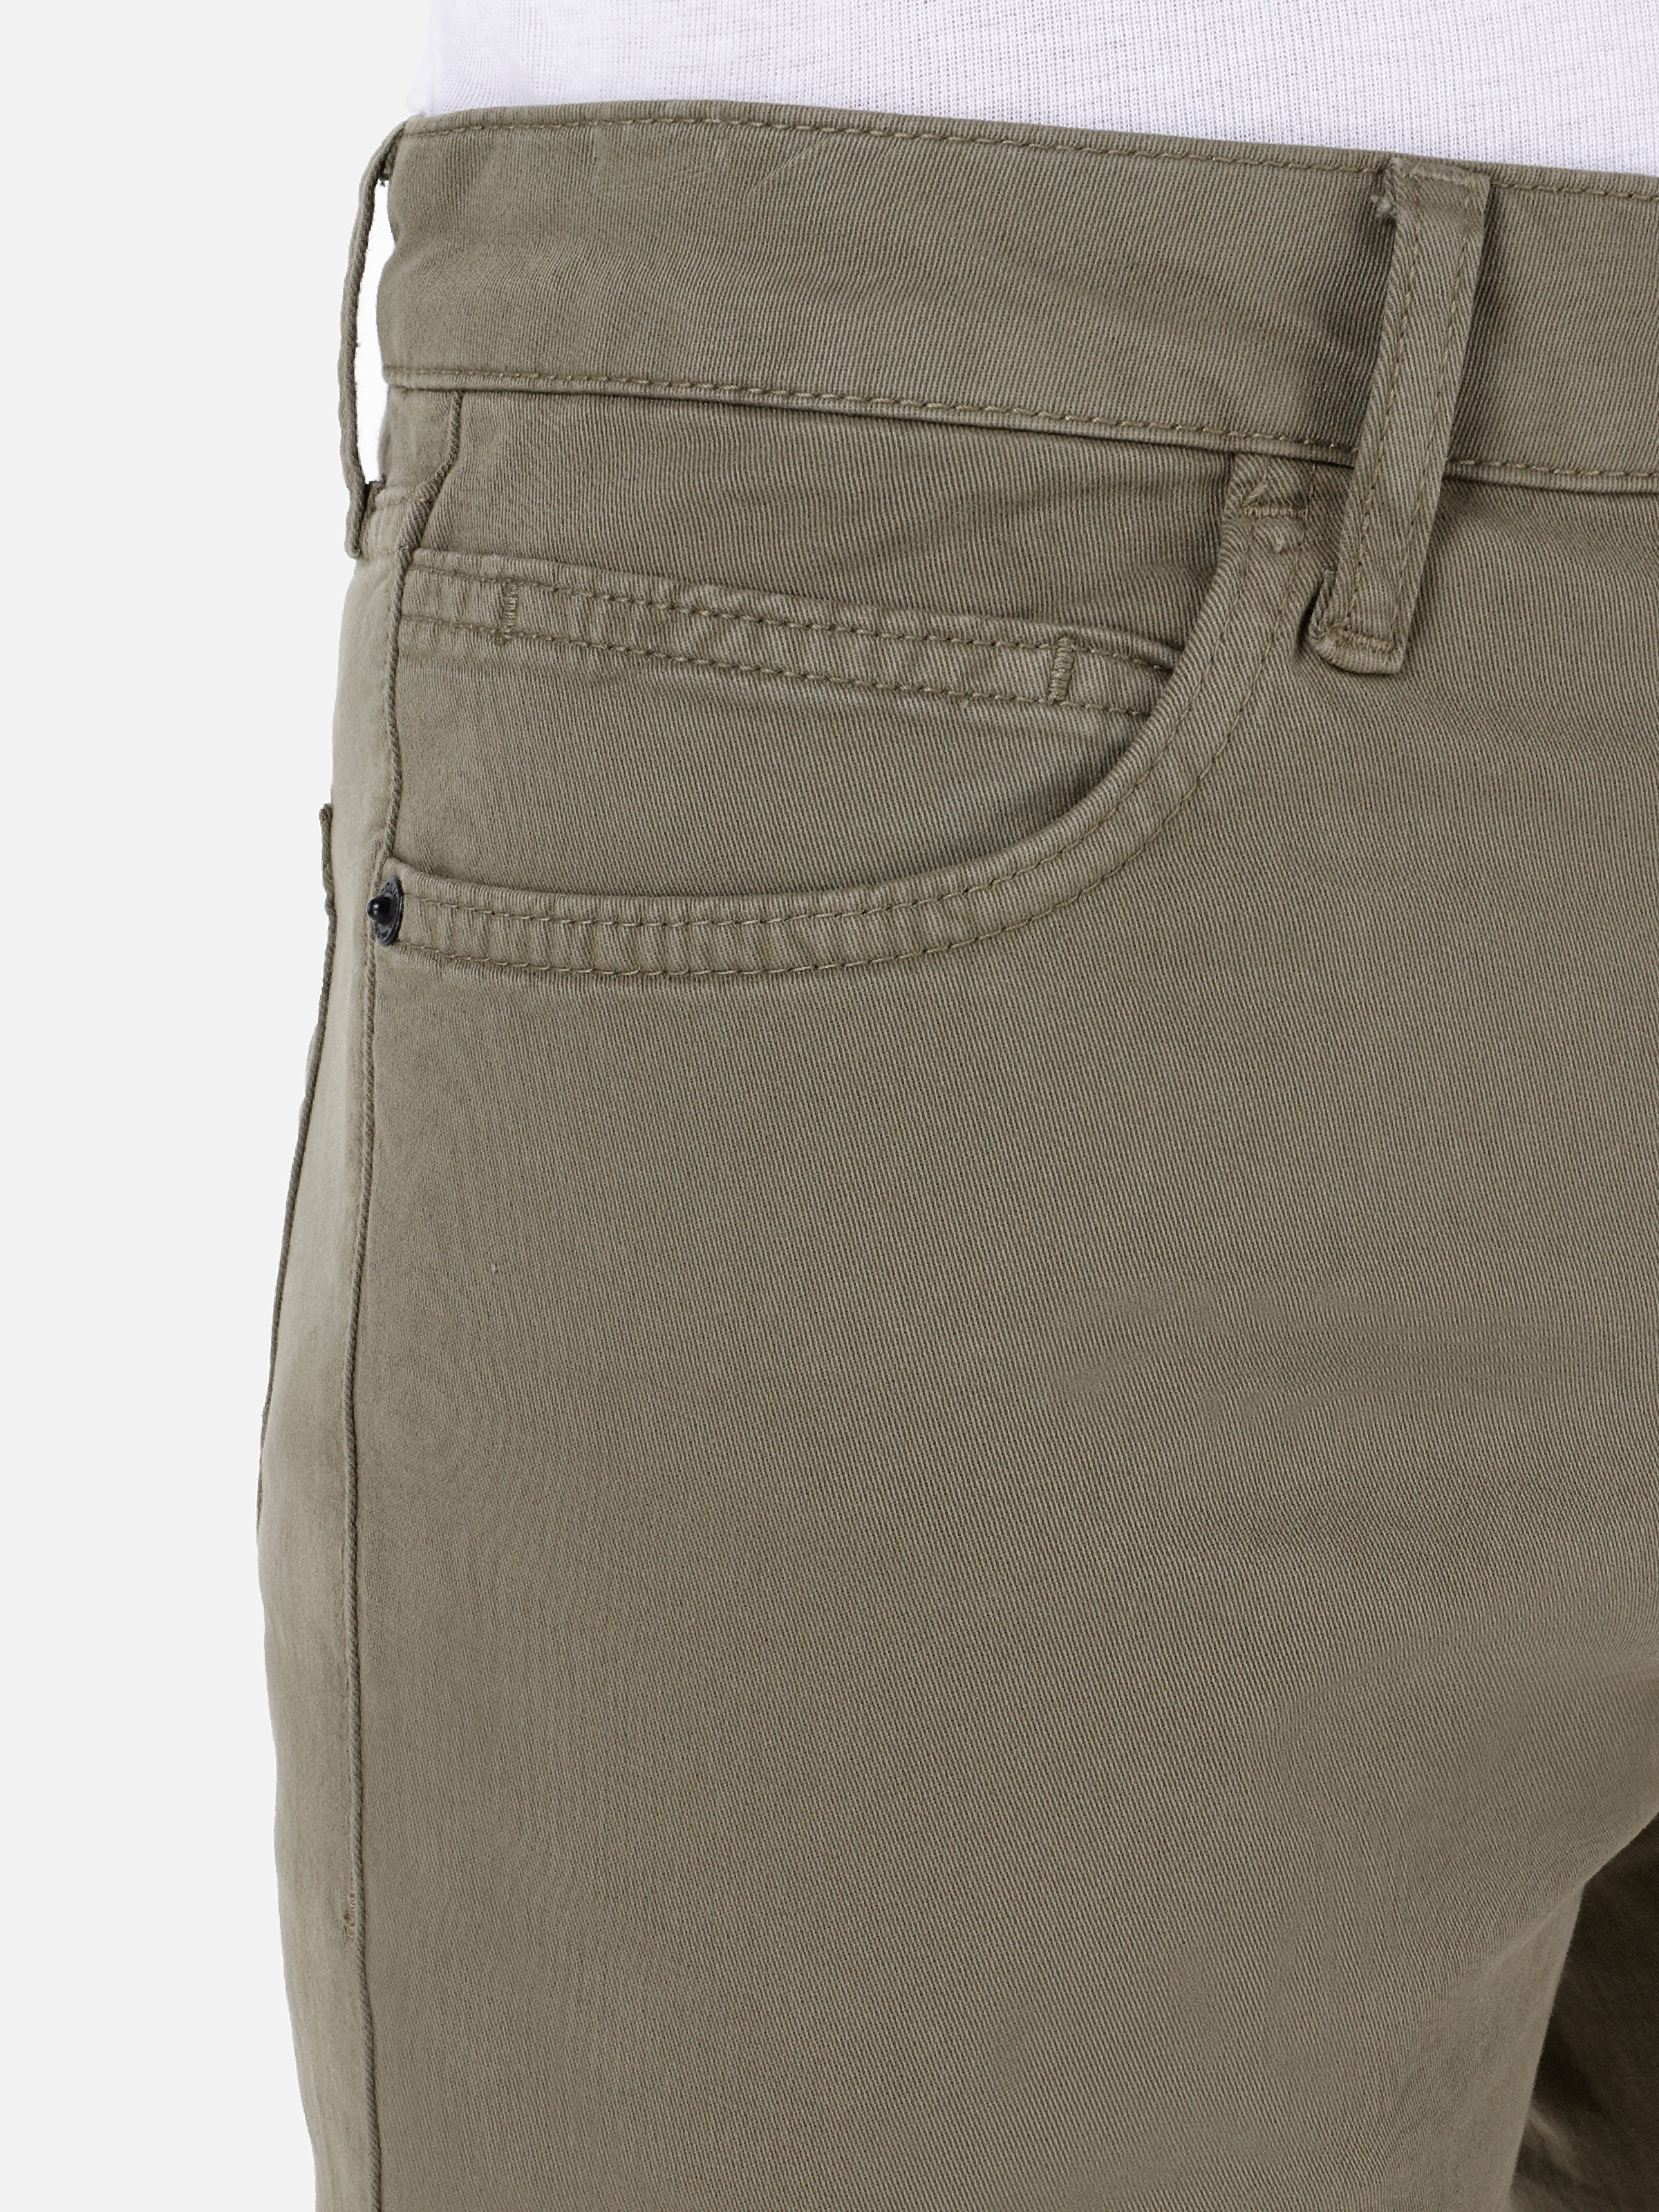 Afficher les détails de Pantalon Kaki Pour Homme, Coupe Droite, Taille Basse, Jambe Droite